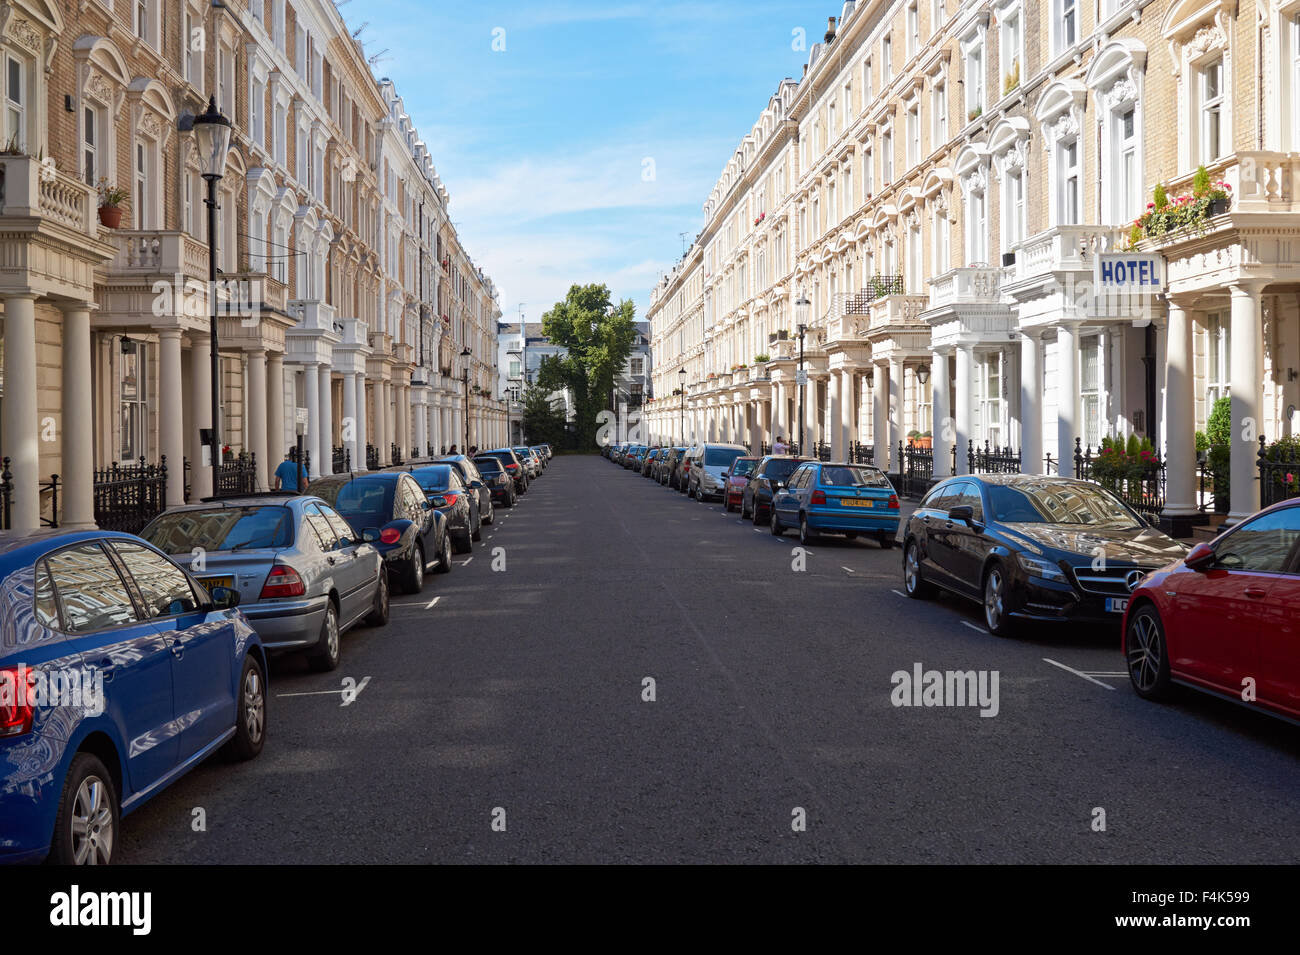 Bâtiments victoriens dans la rue résidentielle de Notting Hill, Kensington, West London Angleterre Royaume-Uni Banque D'Images